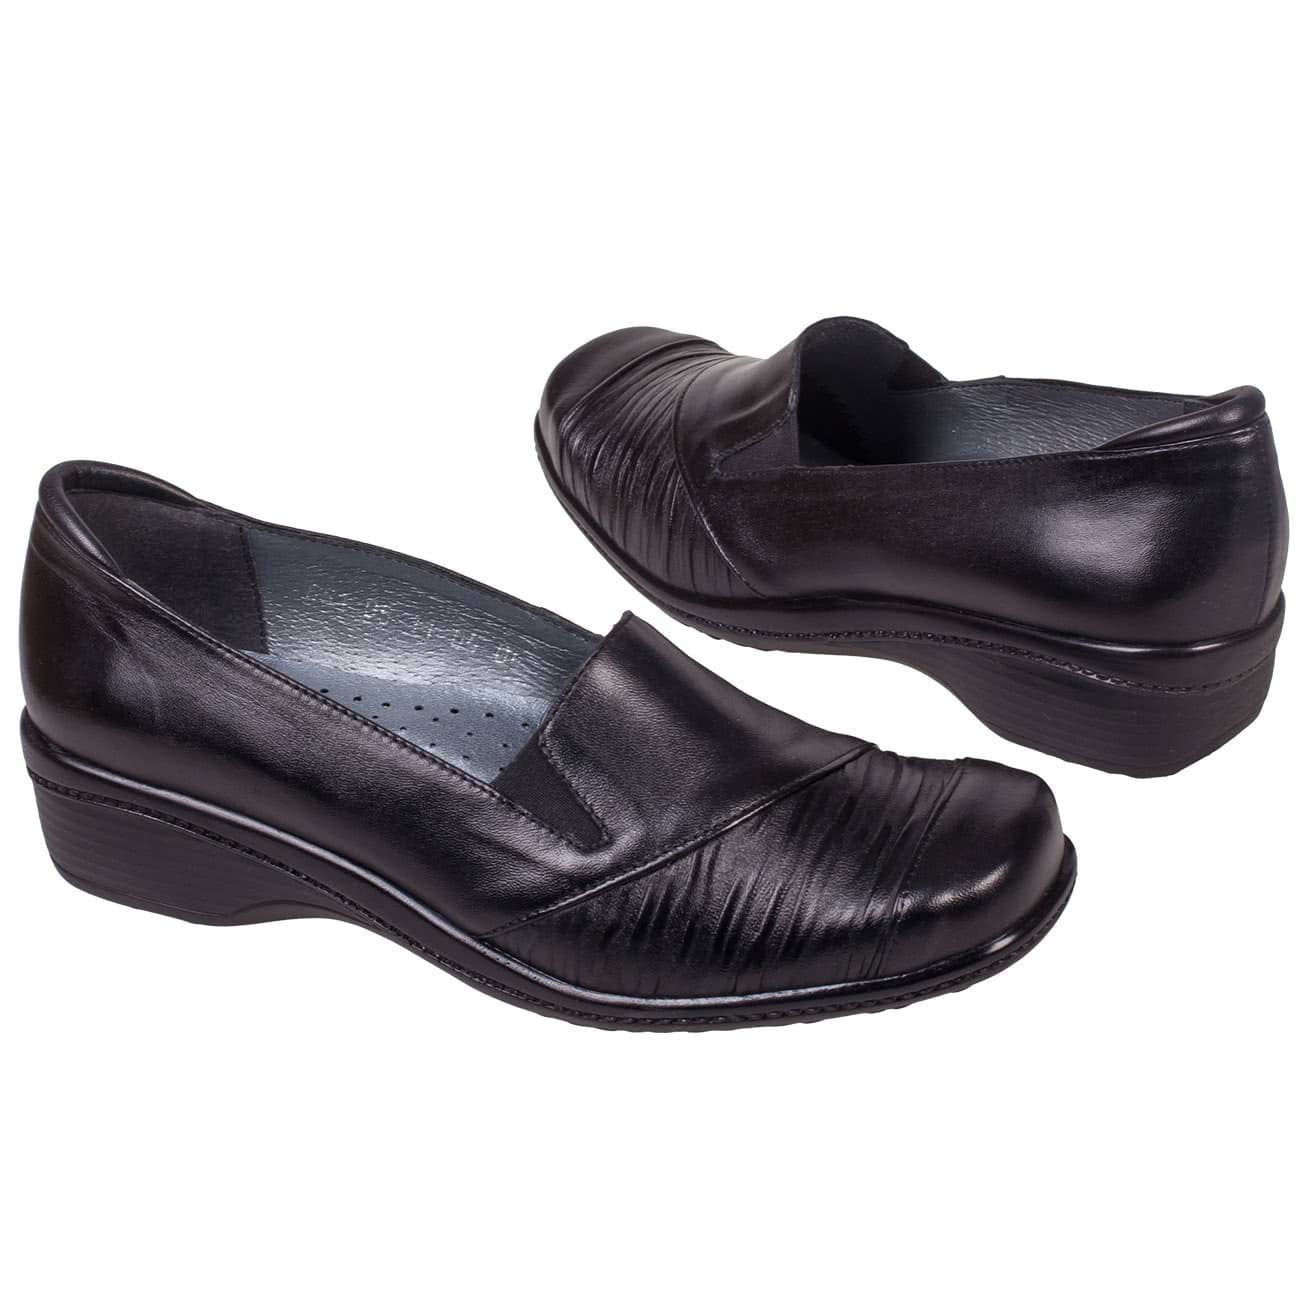 Черные женские ортопедические ботинки на танкетке без шнурков купить винтернет магазине Kwinto